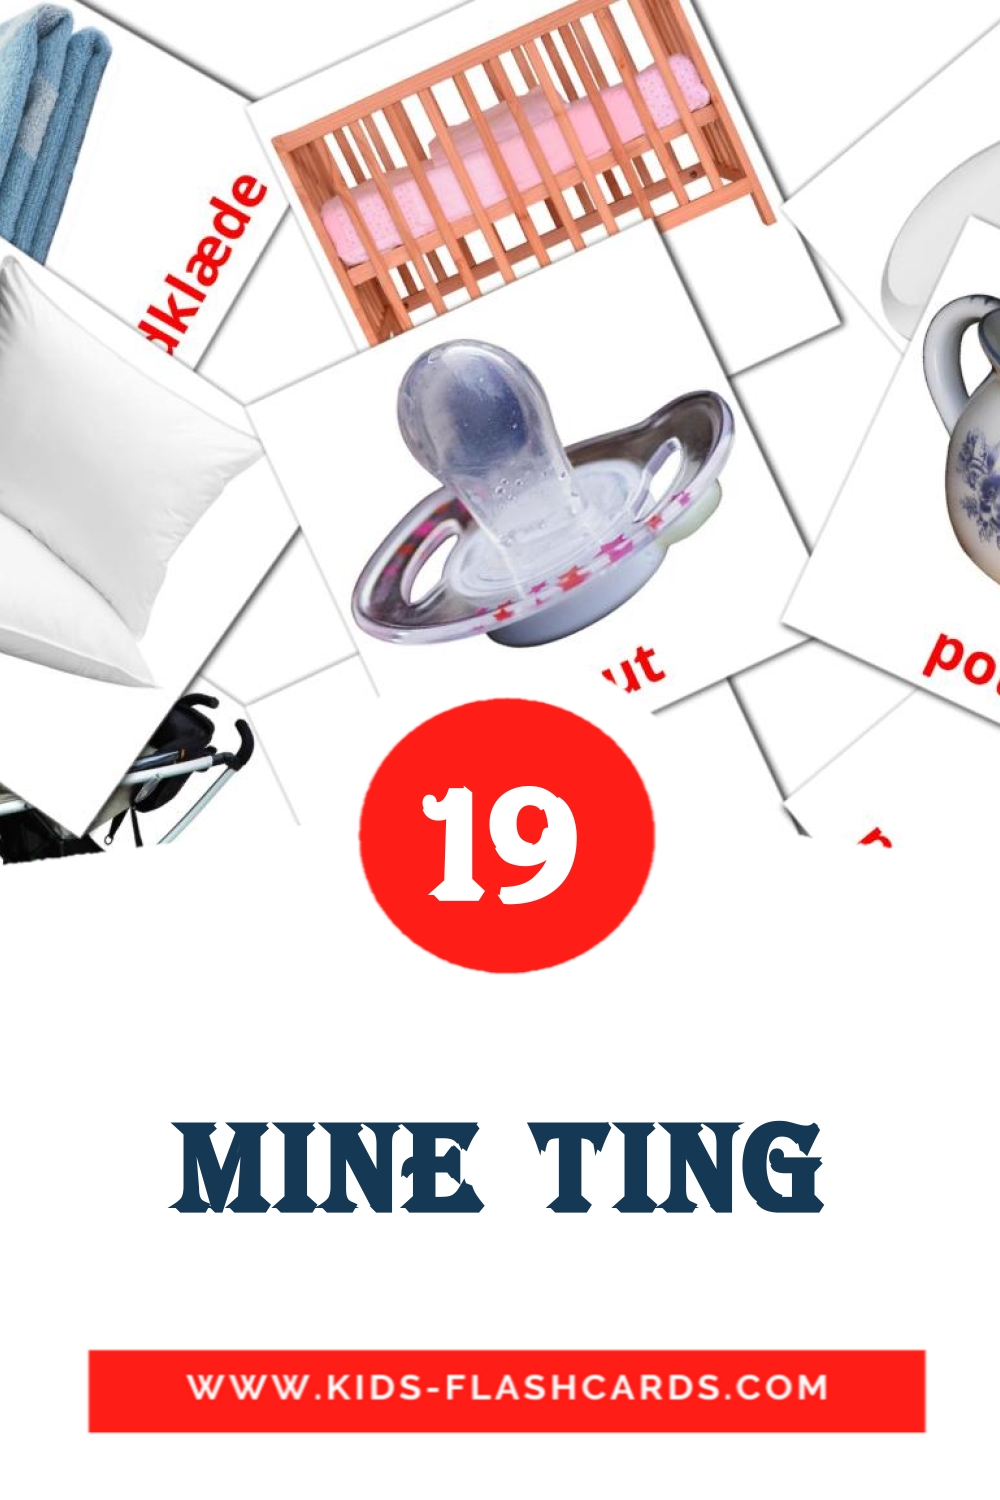 Mine ting на датском для Детского Сада (19 карточек)